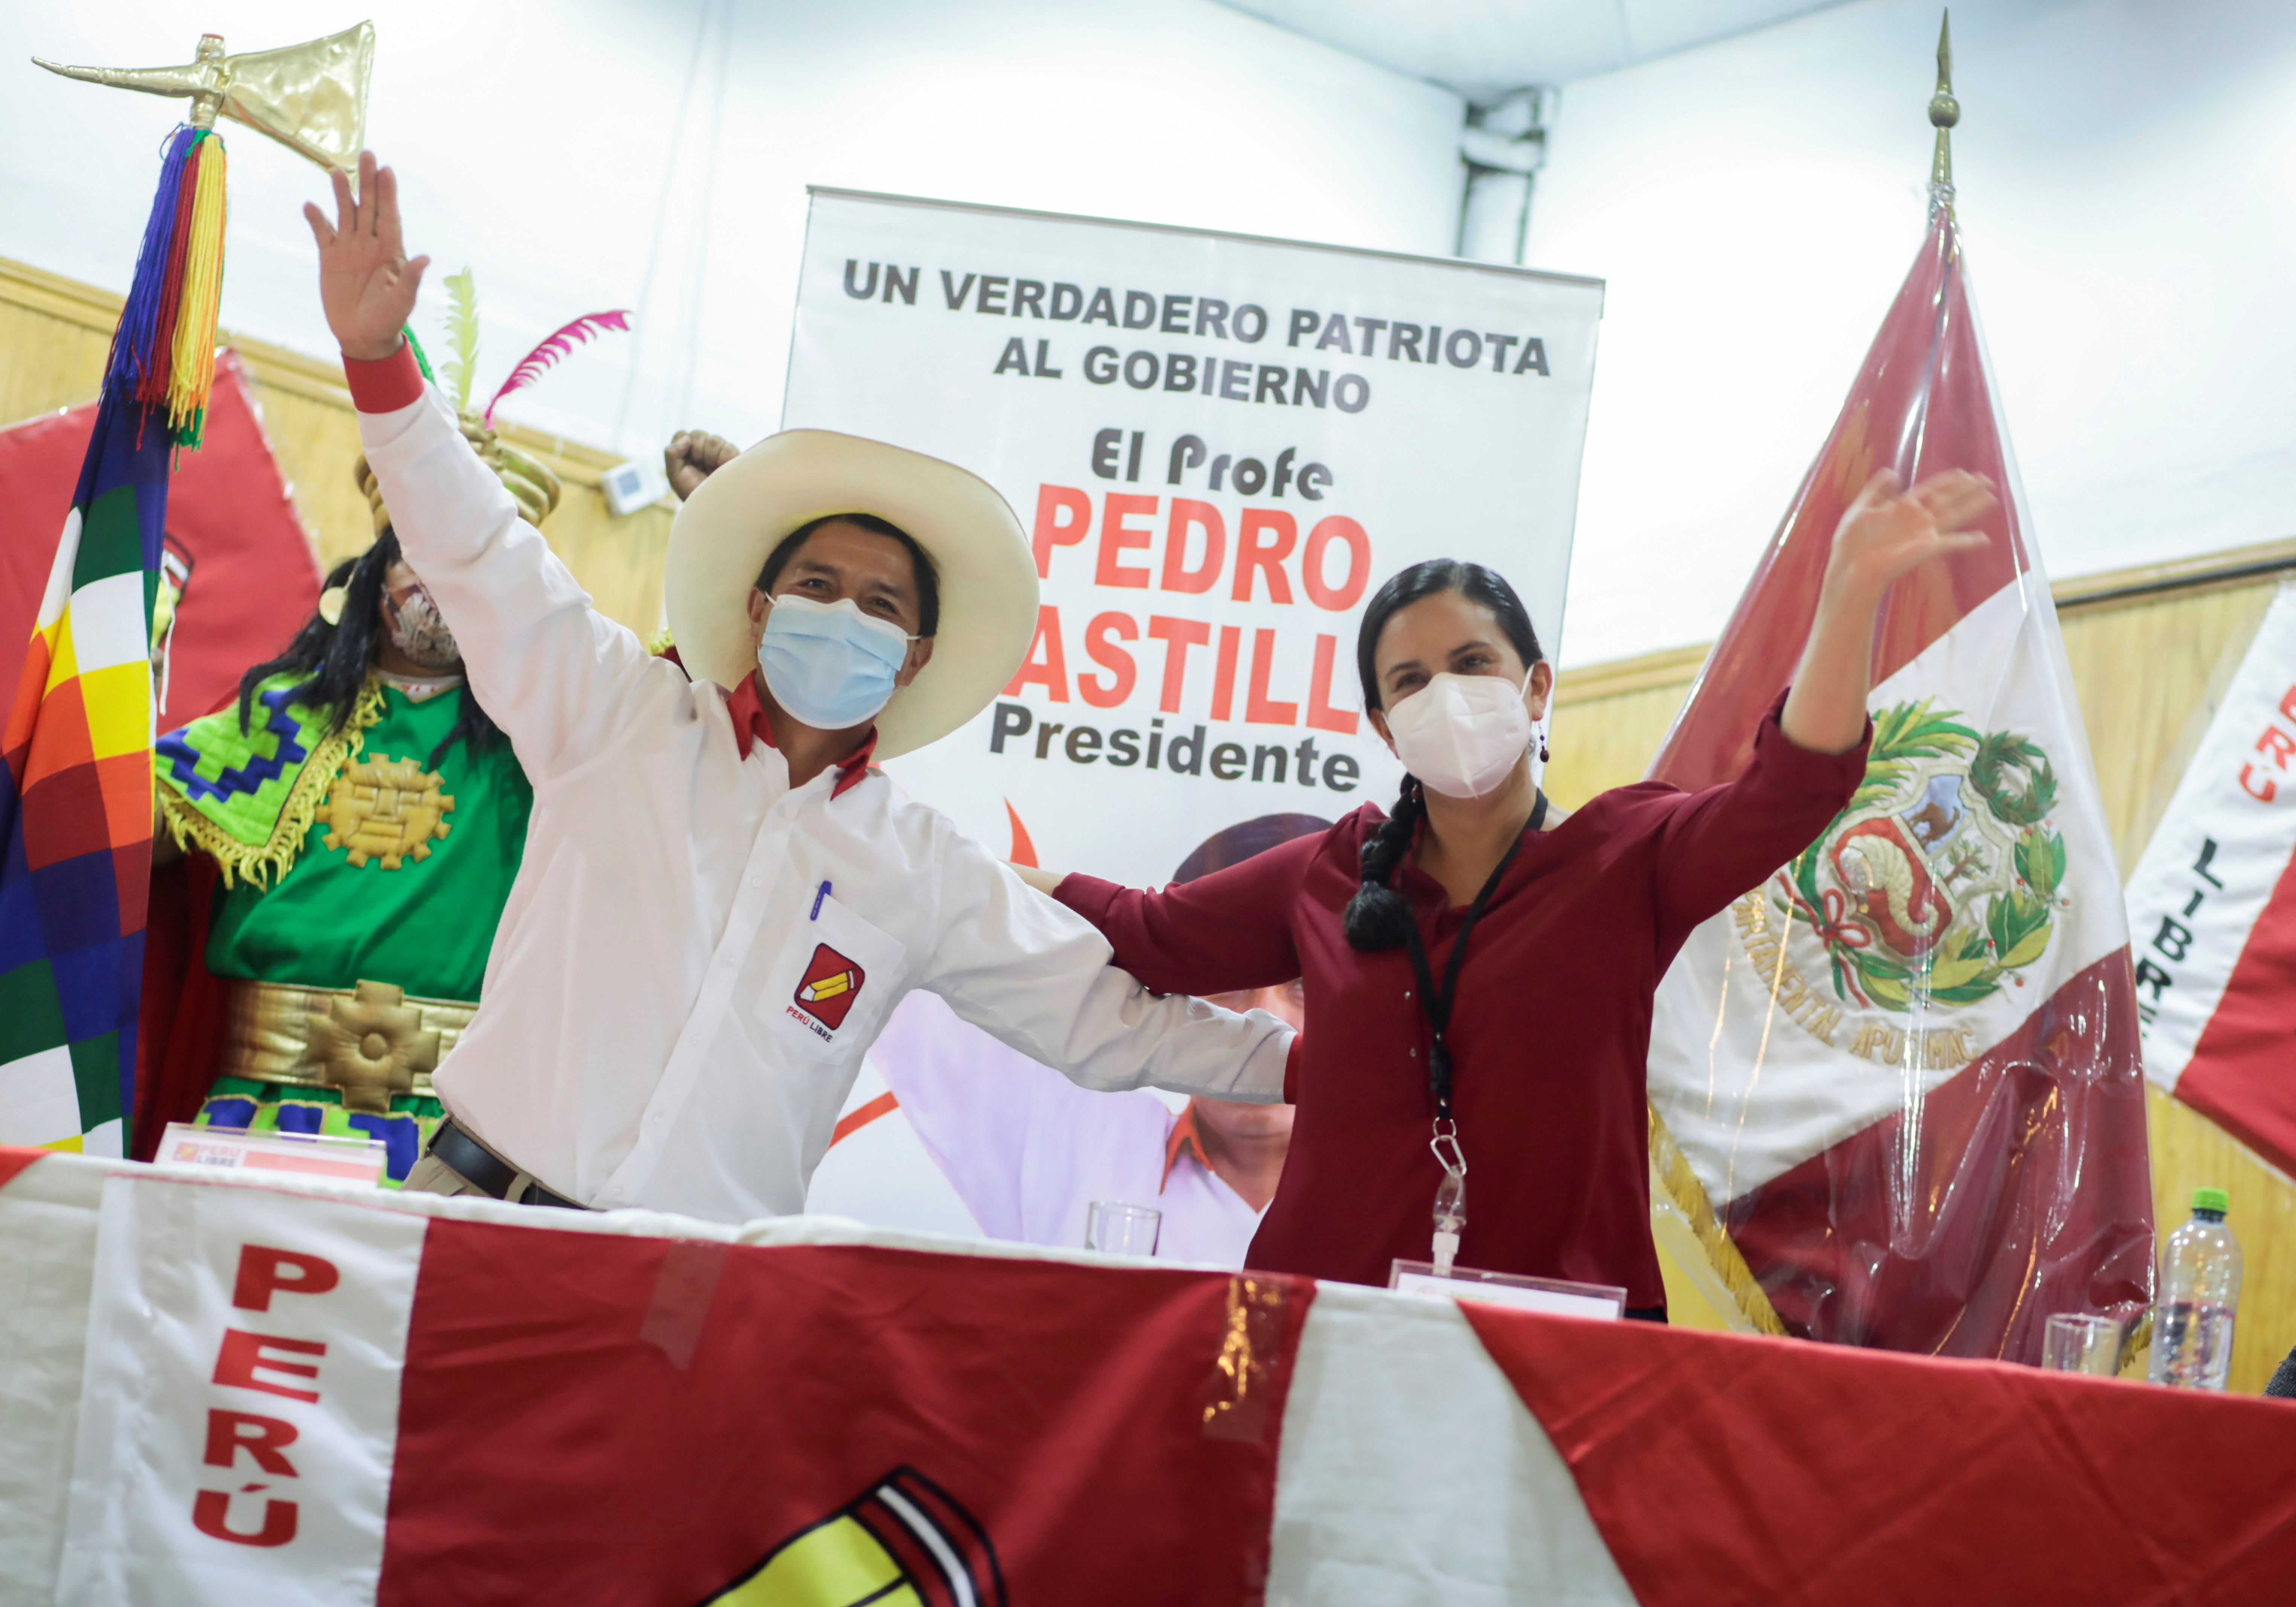 La alianza firmada entre Castillo y la centroizquierdista Verónika Mendoza le facilitó el acercamiento con cuadros técnicos de izquierda moderada (Reuters)